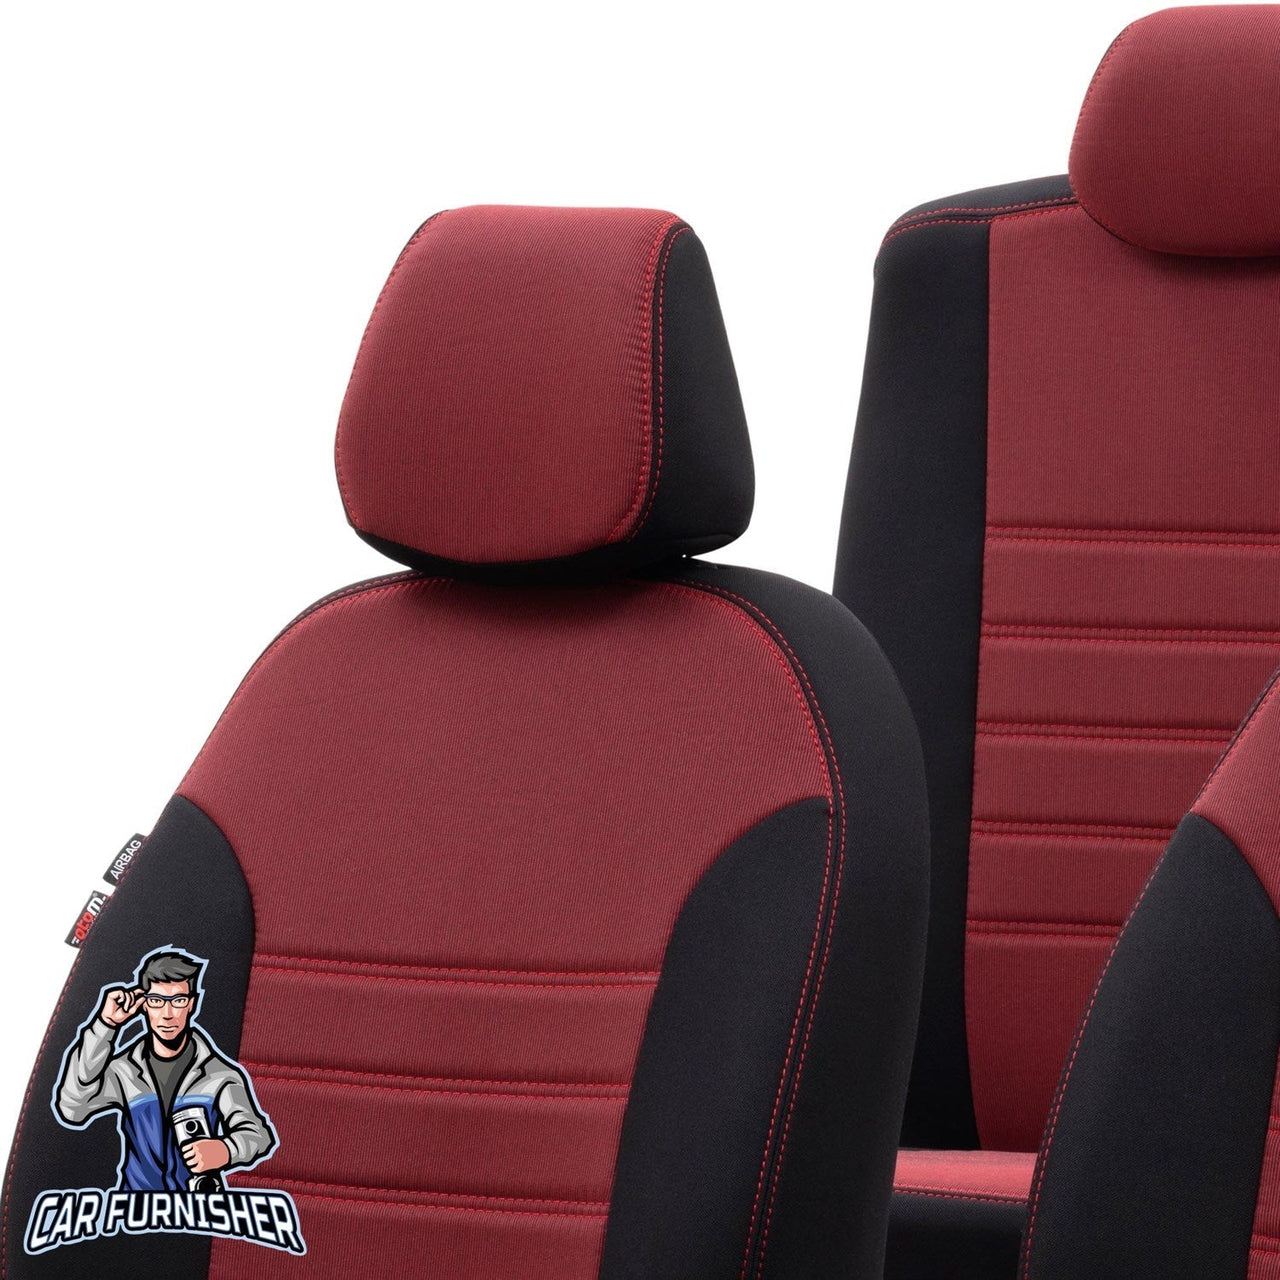 Audi Q3 Seat Cover Original Jacquard Design Red Jacquard Fabric